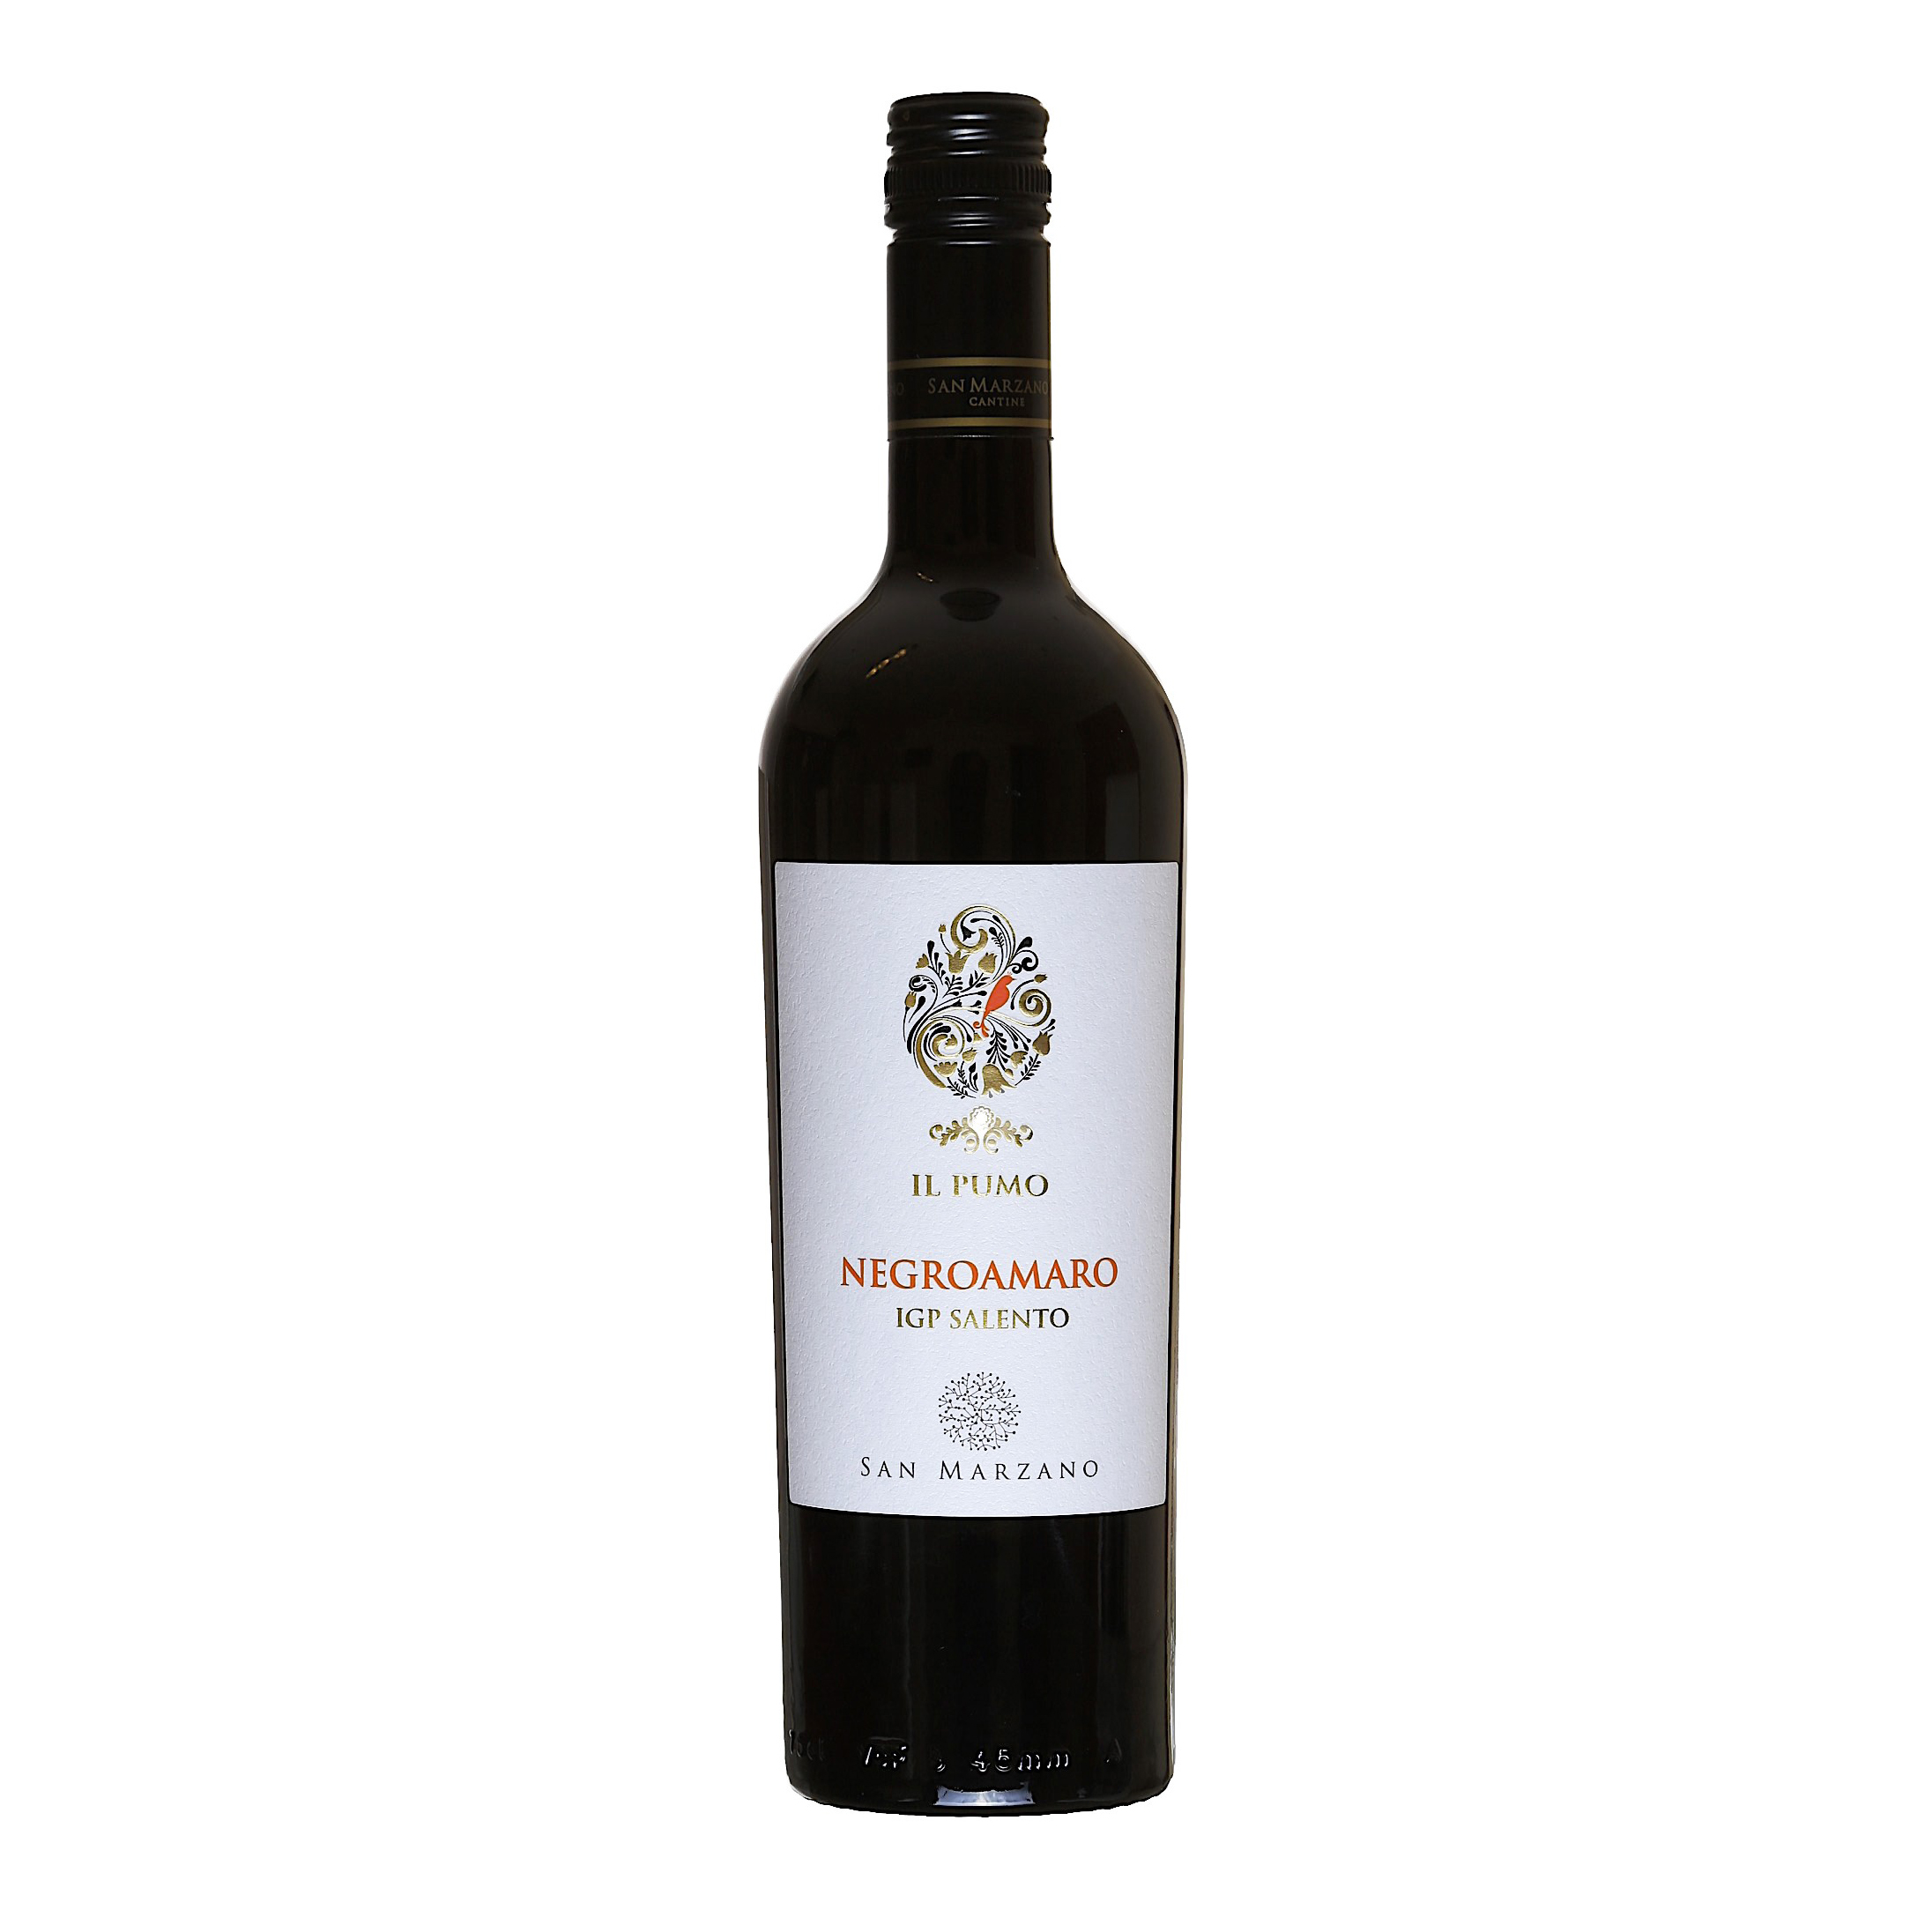 IL Pumo Negroamaro là một loại rượu vang đỏ toàn thân với hậu vị kéo dài. Nó được làm từ nho Negroamaro được trồng ở vùng Puglia của Ý. Rượu được ủ 12 tháng trong thùng gỗ sồi.

IL Pumo Negroamaro là loại rượu sẵn sàng để uống ngay bây giờ, nhưng nó cũng sẽ cải thiện theo thời gian. Đó là một sự lựa chọn tuyệt vời cho những dịp đặc biệt hoặc cho những người đánh giá cao rượu vang hảo hạng.

Rượu được đặt tên theo "Pumo", là tên địa phương của quả lựu. Quả lựu là biểu tượng của sự màu mỡ và phong phú, và nó thường được sử dụng trong sản xuất rượu vang để thể hiện sự phong phú và phức tạp của rượu.

Rượu được sản xuất bởi nhà máy rượu Cantine Due Palme, nằm ở vùng Puglia của Ý. Nhà máy rượu được thành lập vào năm 1973 bởi gia đình De Palma. Nhà máy rượu hiện được điều hành bởi thế hệ thứ ba của gia đình De Palma.

IL Pumo Negroamaro là một loại rượu vang nổi tiếng đã nhận được đánh giá cao từ các nhà phê bình rượu vang. Nó đã được thưởng hơn 90 điểm từ Wine Spectator, Robert Parker's Wine Advocate và James Suckling.